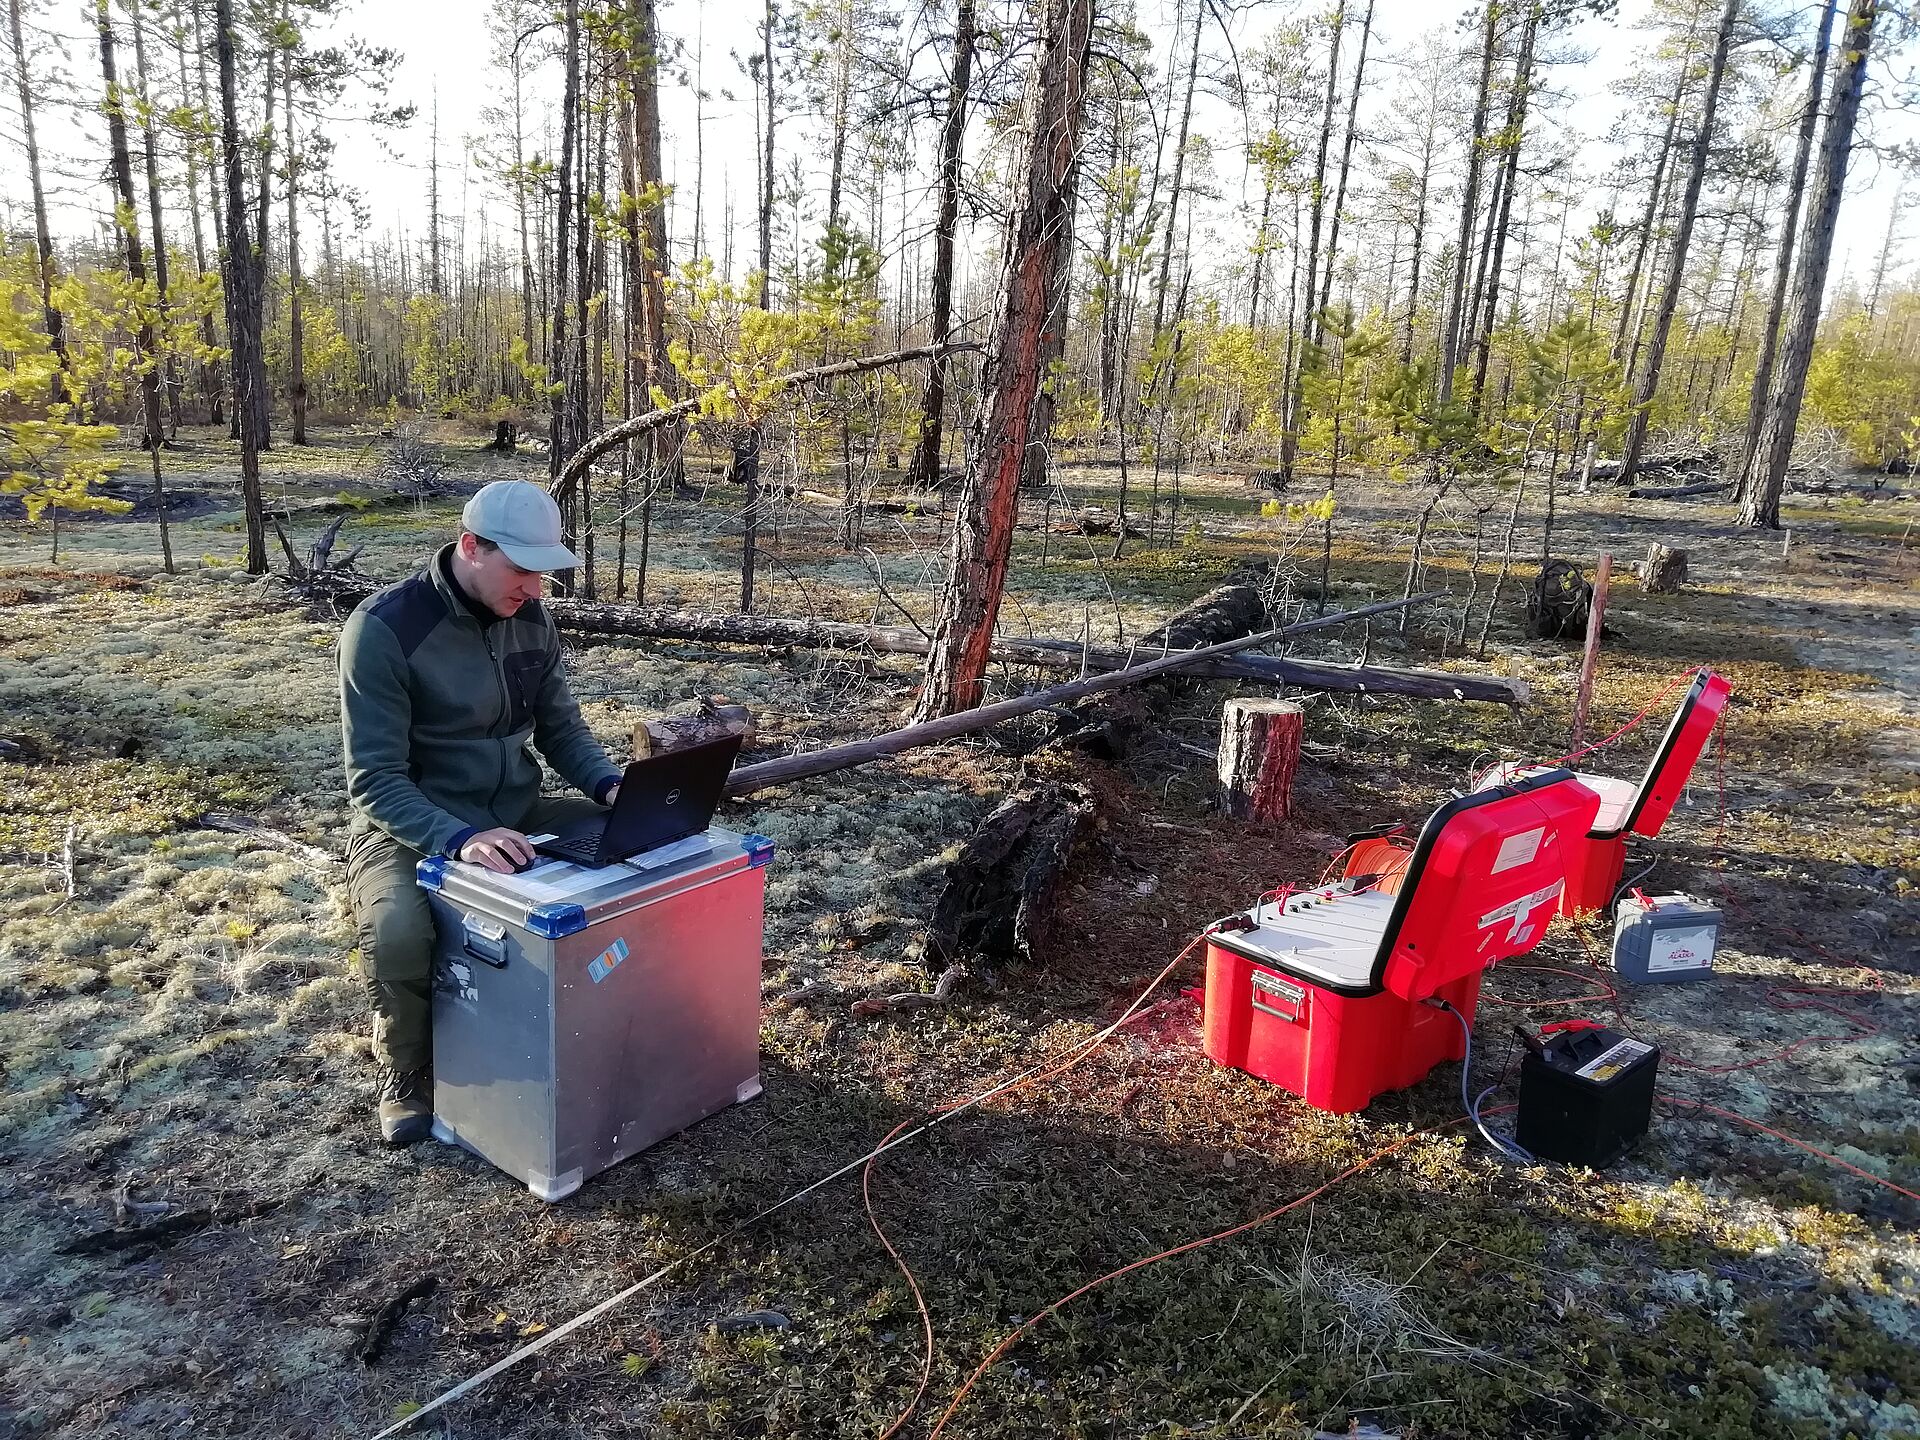 Messungen zu Detektion von Permafrost in Sibirien, Waldgebiet nahe der Stadt Jakutsk